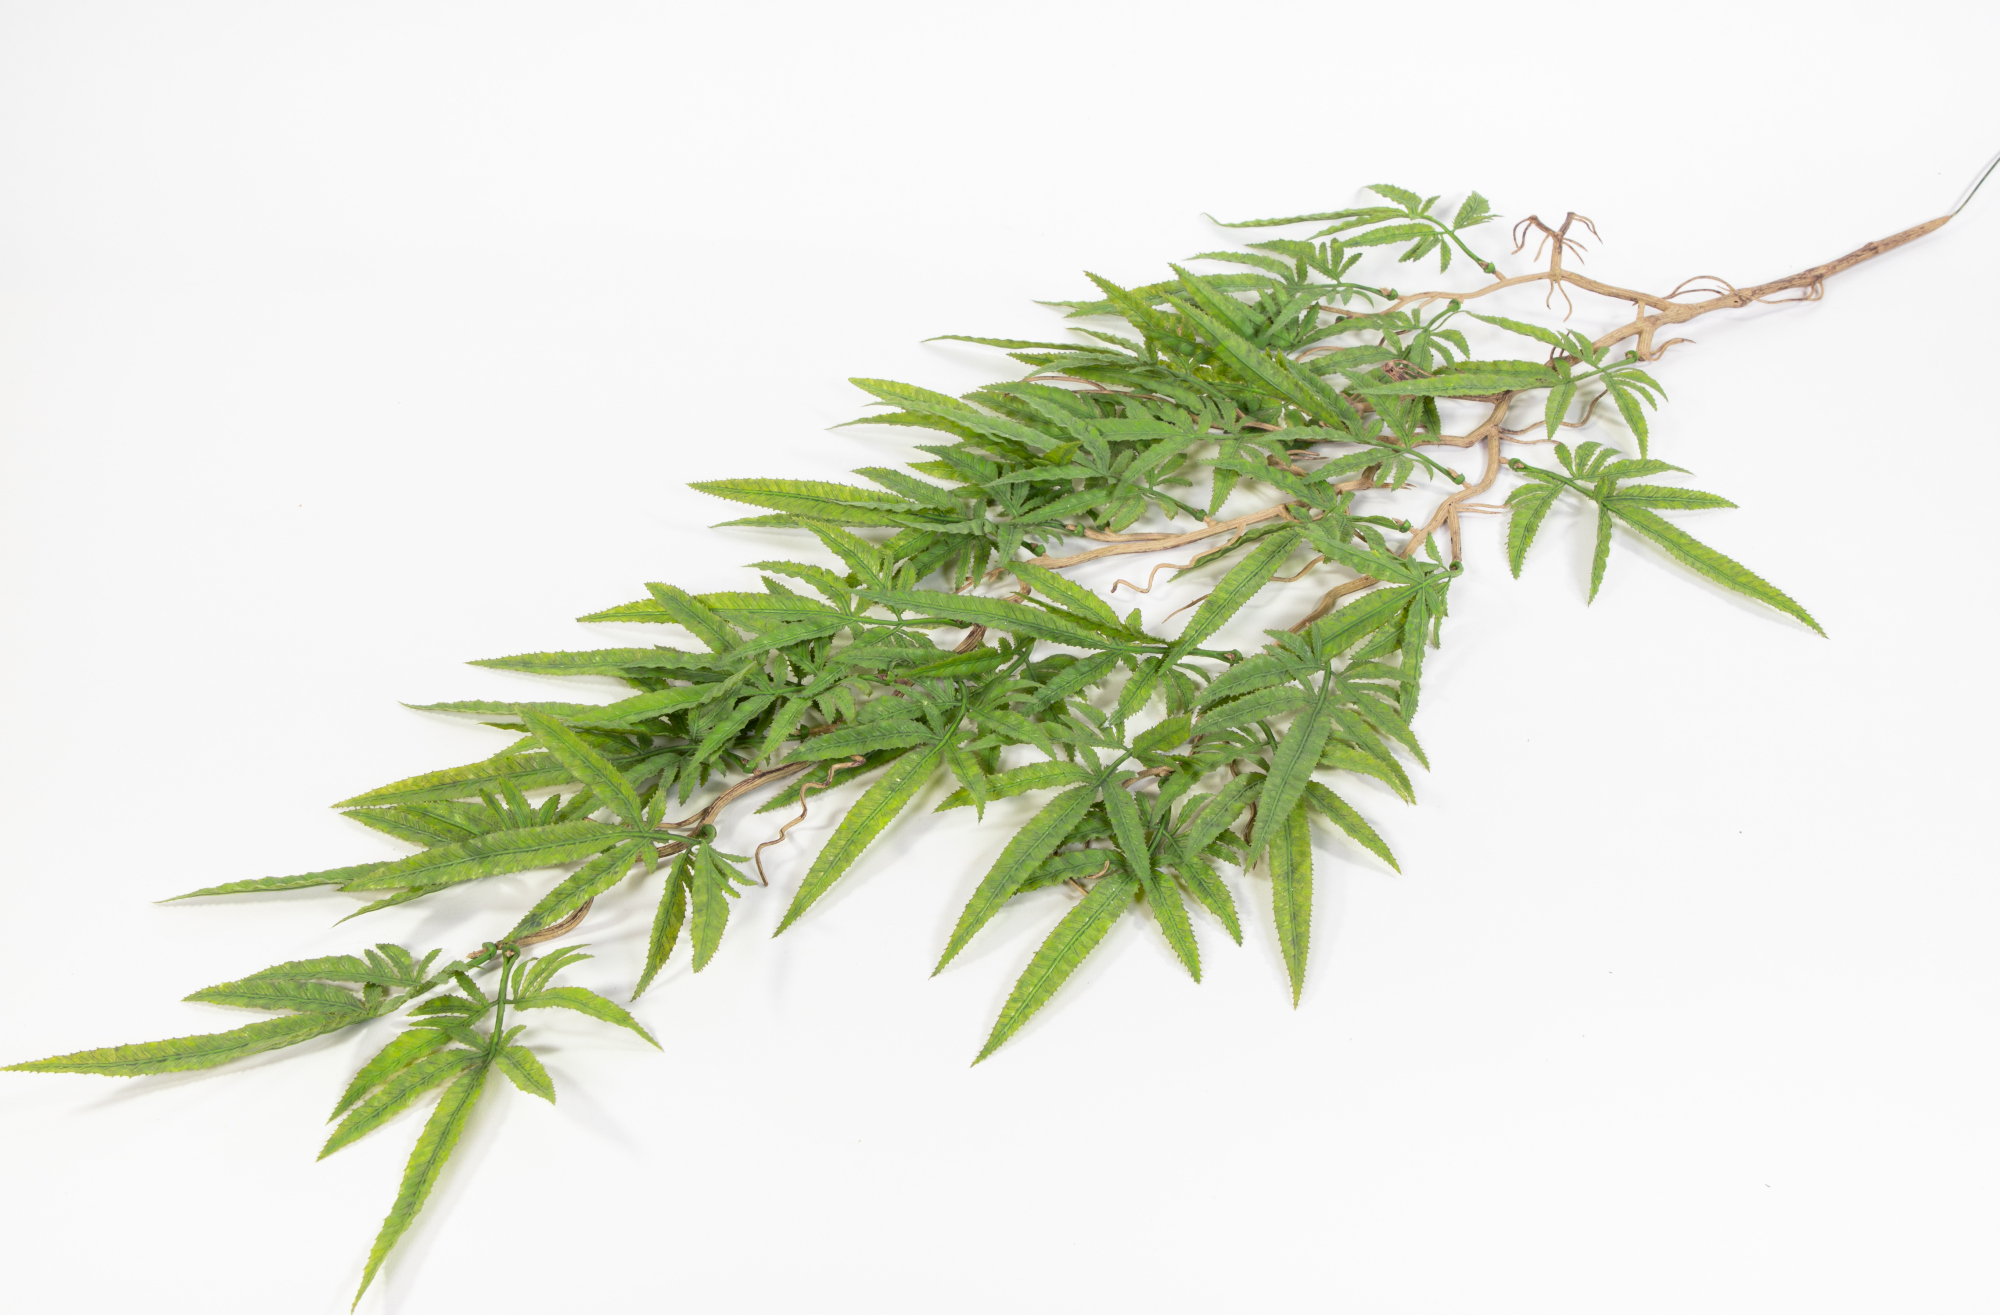 Hanfranke / Cannabisranke 95cm JA Kunstpflanzen künstliche Pflanzen Ranken Hanf Cannabis Weed